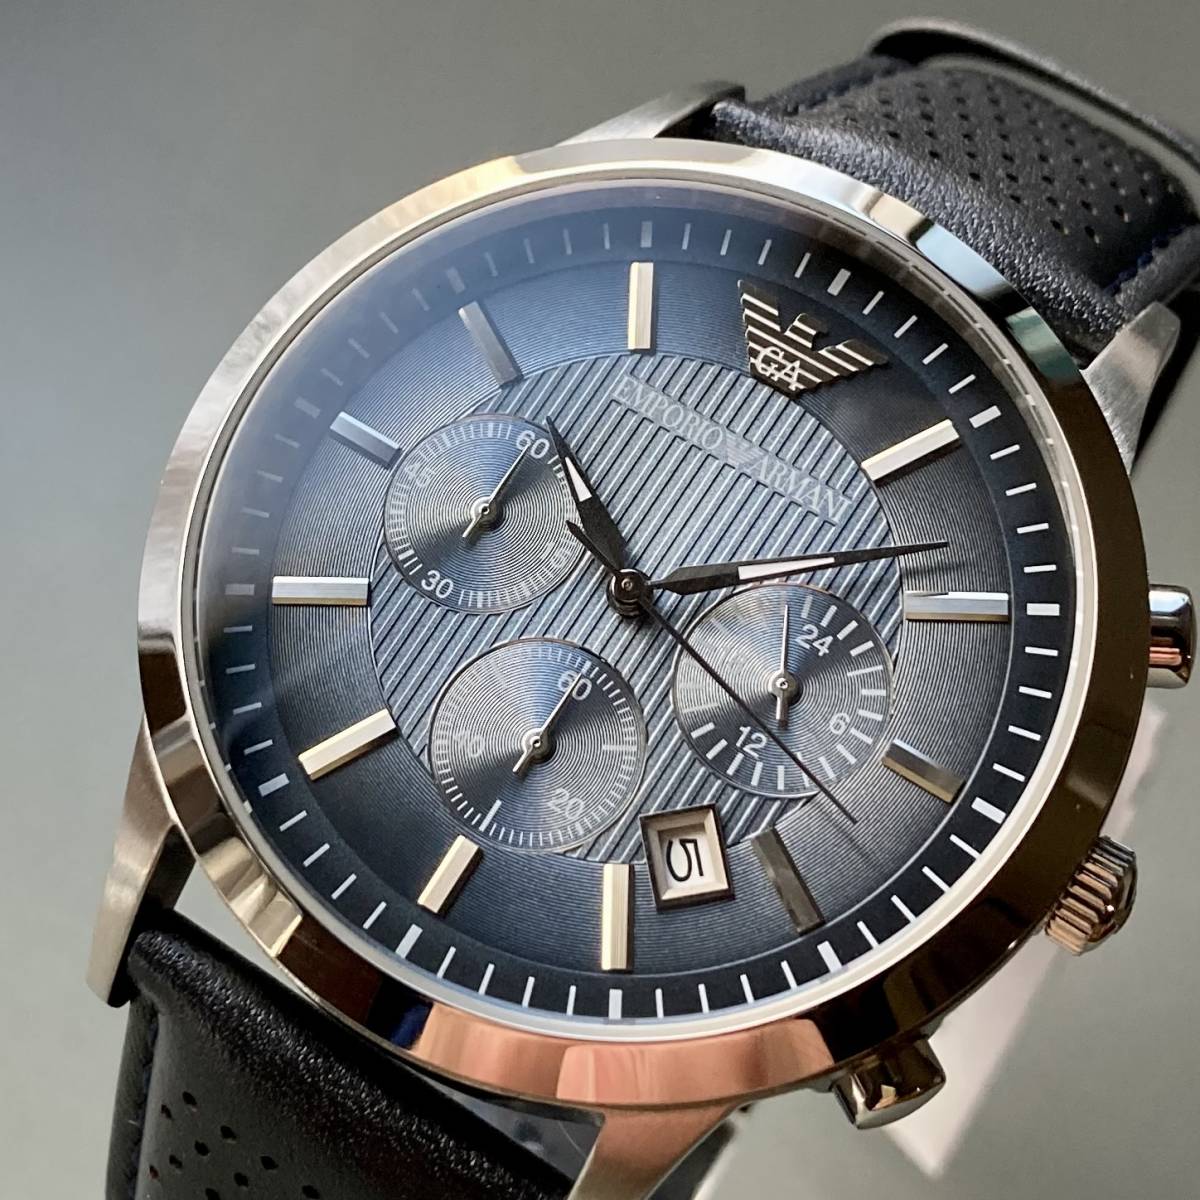 ゴールド ブラックEMPORIO ARMANI 腕時計 メンズ 43㎜ - 通販